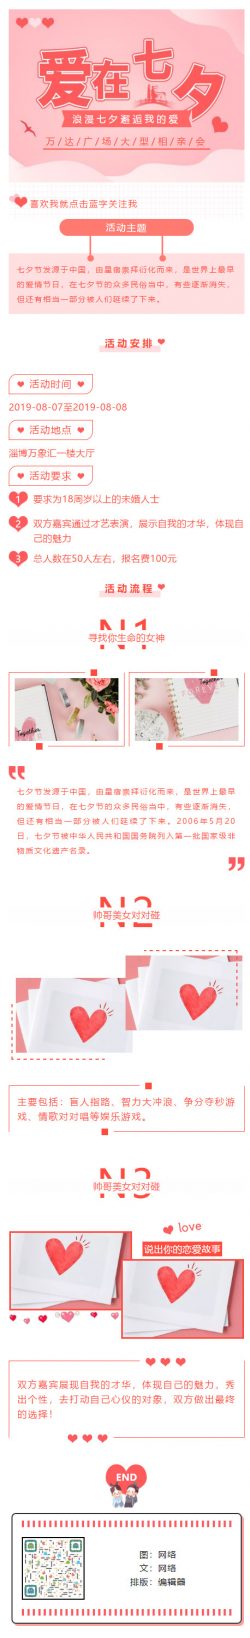 七夕节中国情人节传统节日粉红色风格微信推文模板推送素材